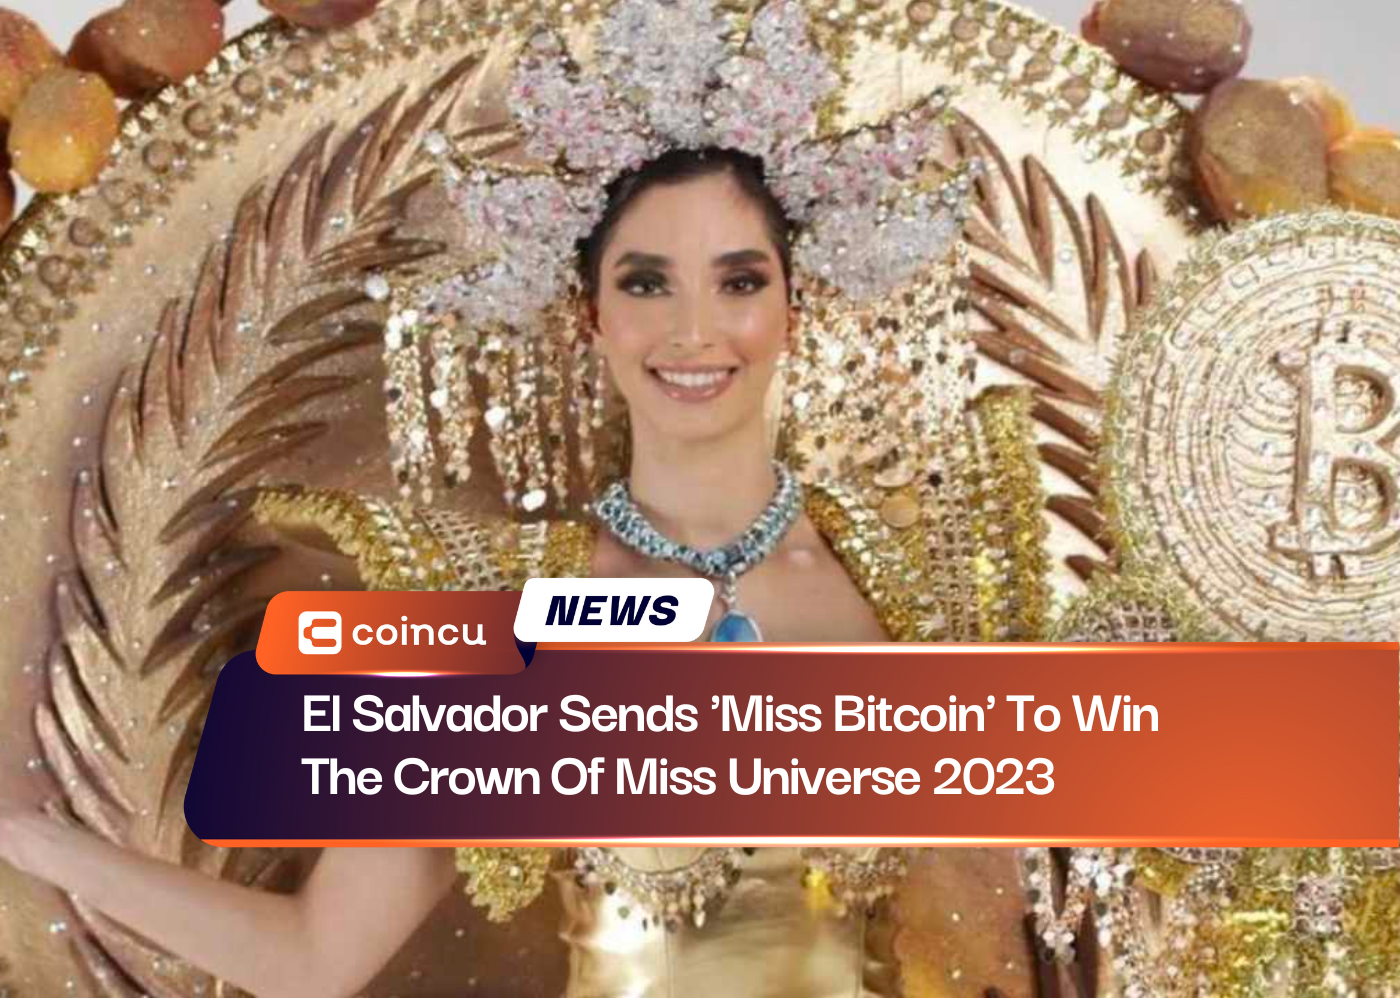 El Salvador envía a 'Miss Bitcoin' a ganar la corona de Miss Universo 2023